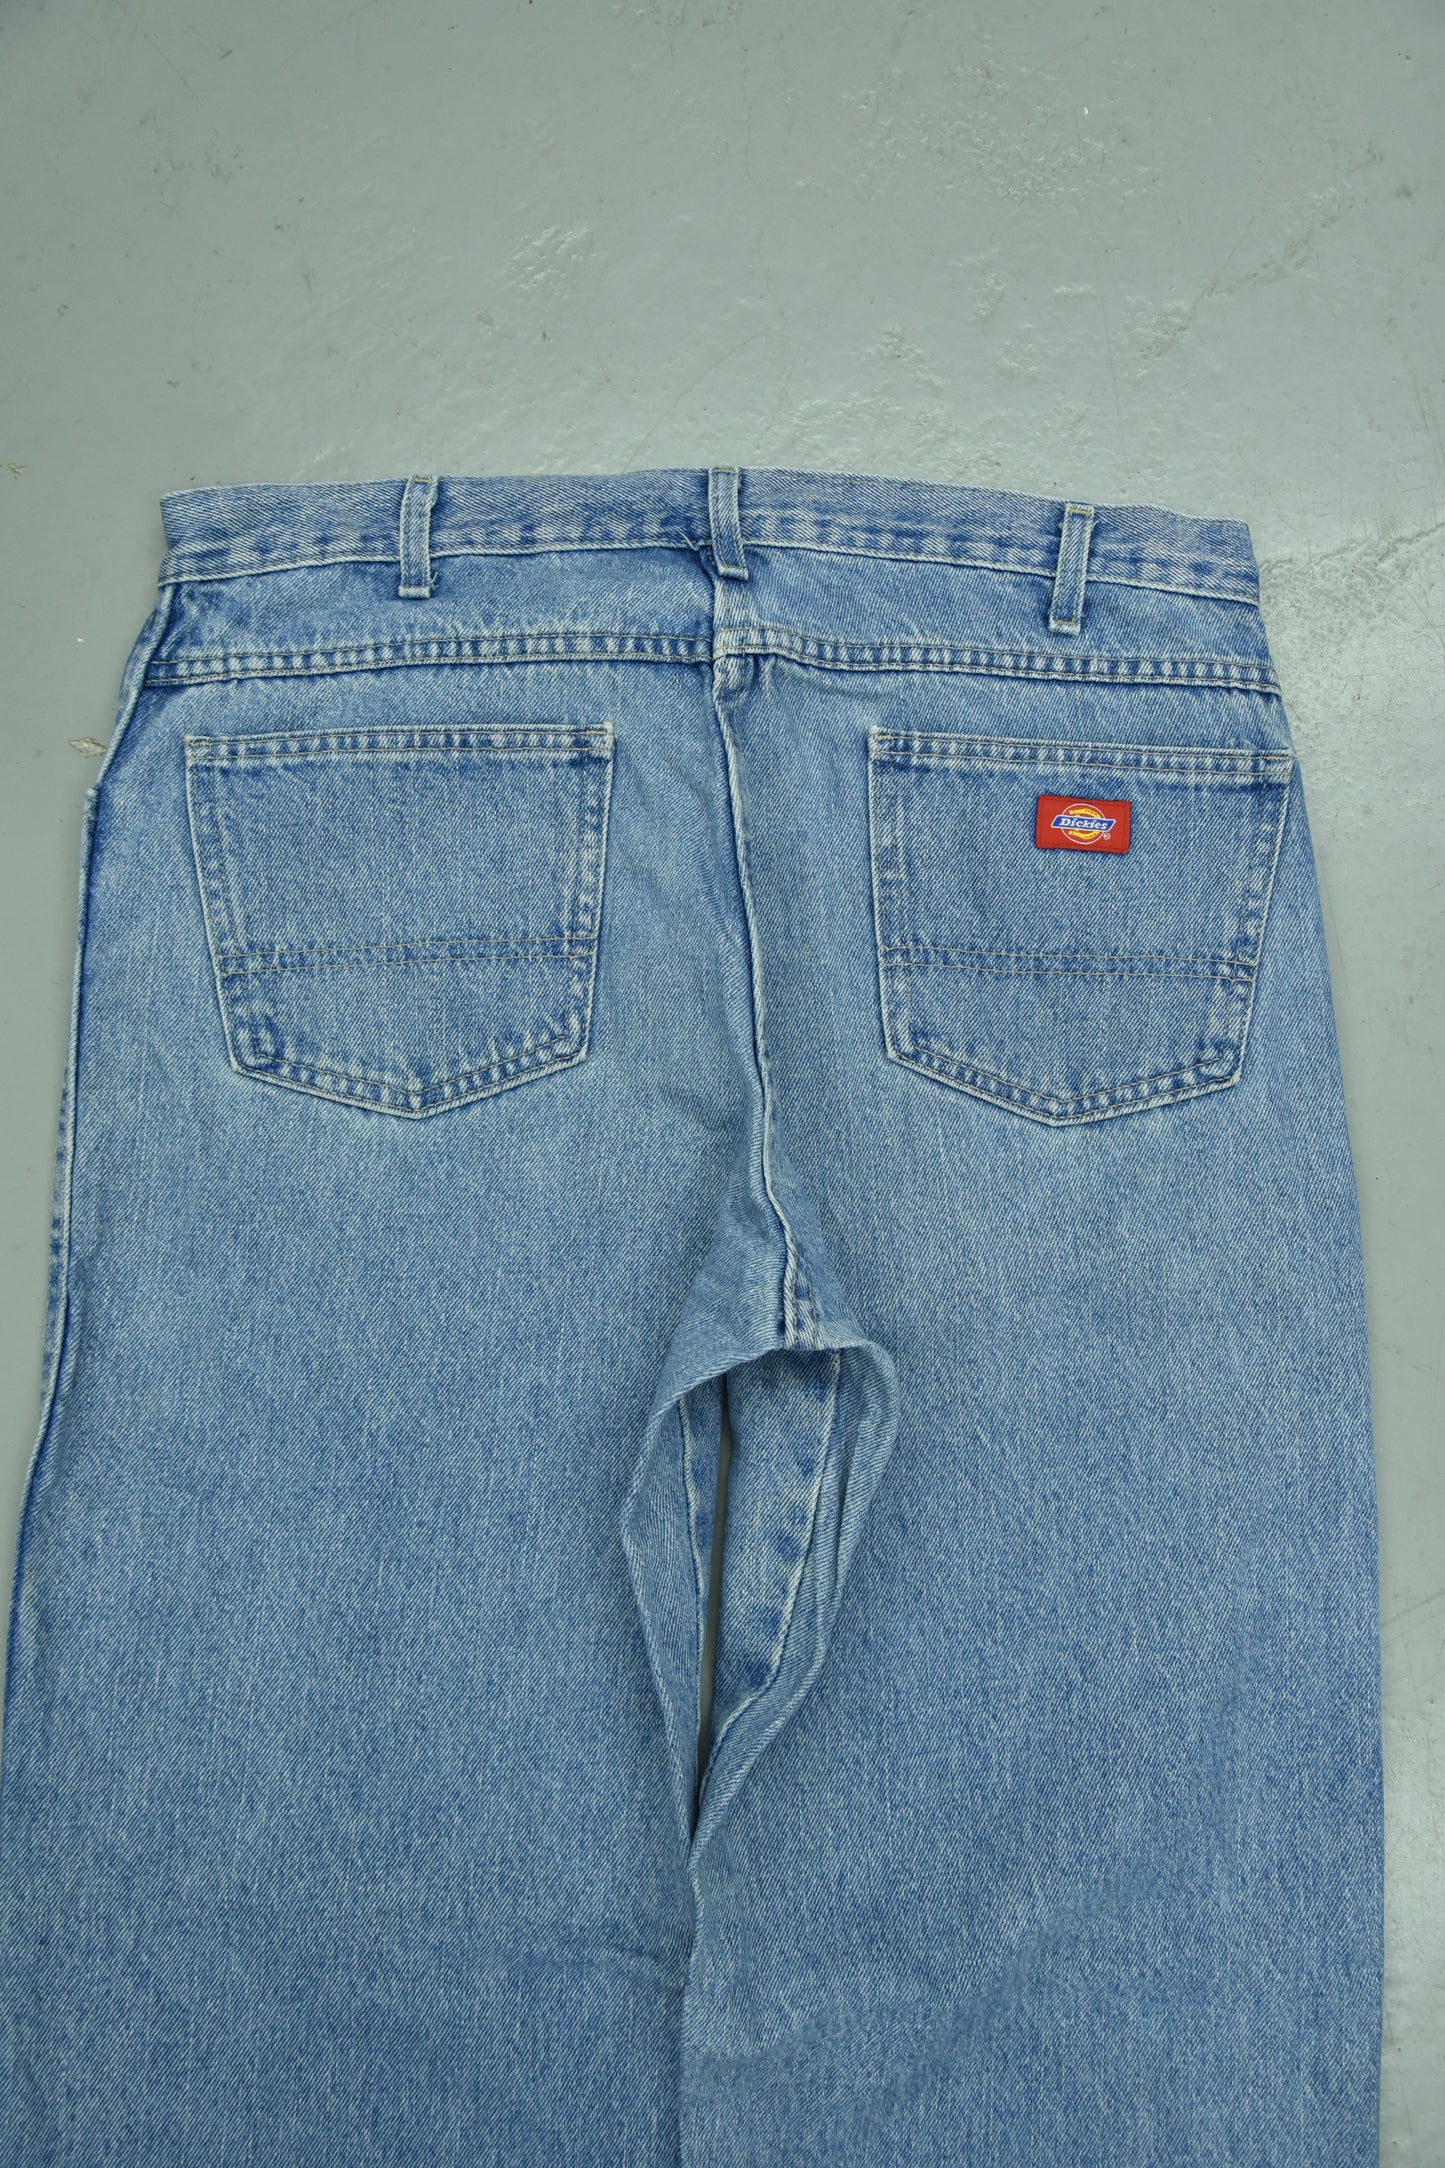 Dickies Blue Jeans Vintage / 36x30